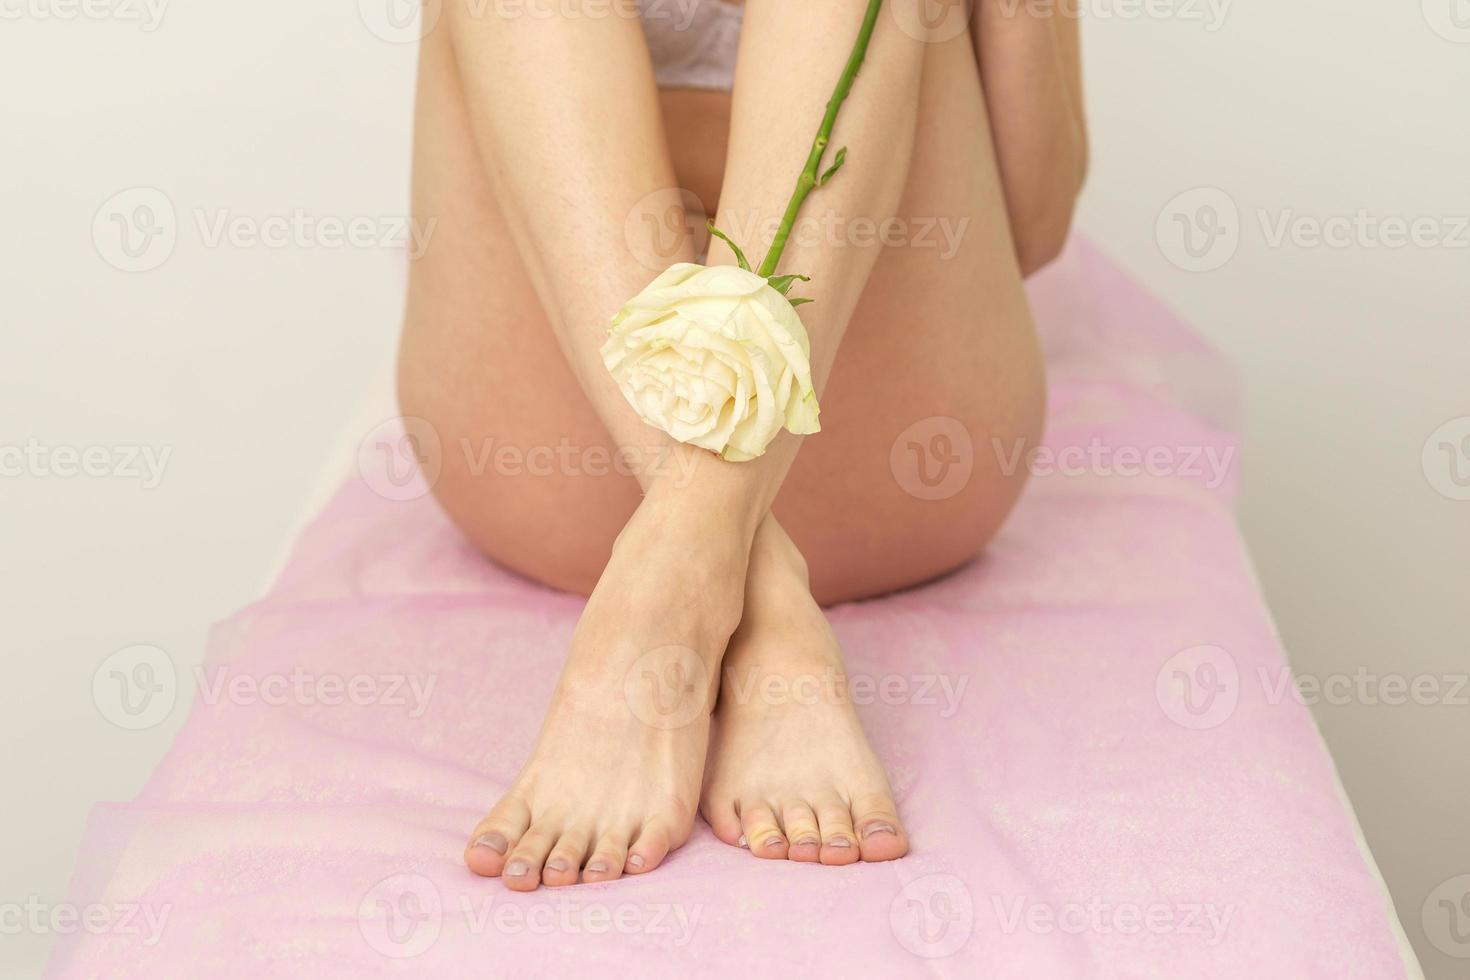 fêmea pernas com branco rosa foto